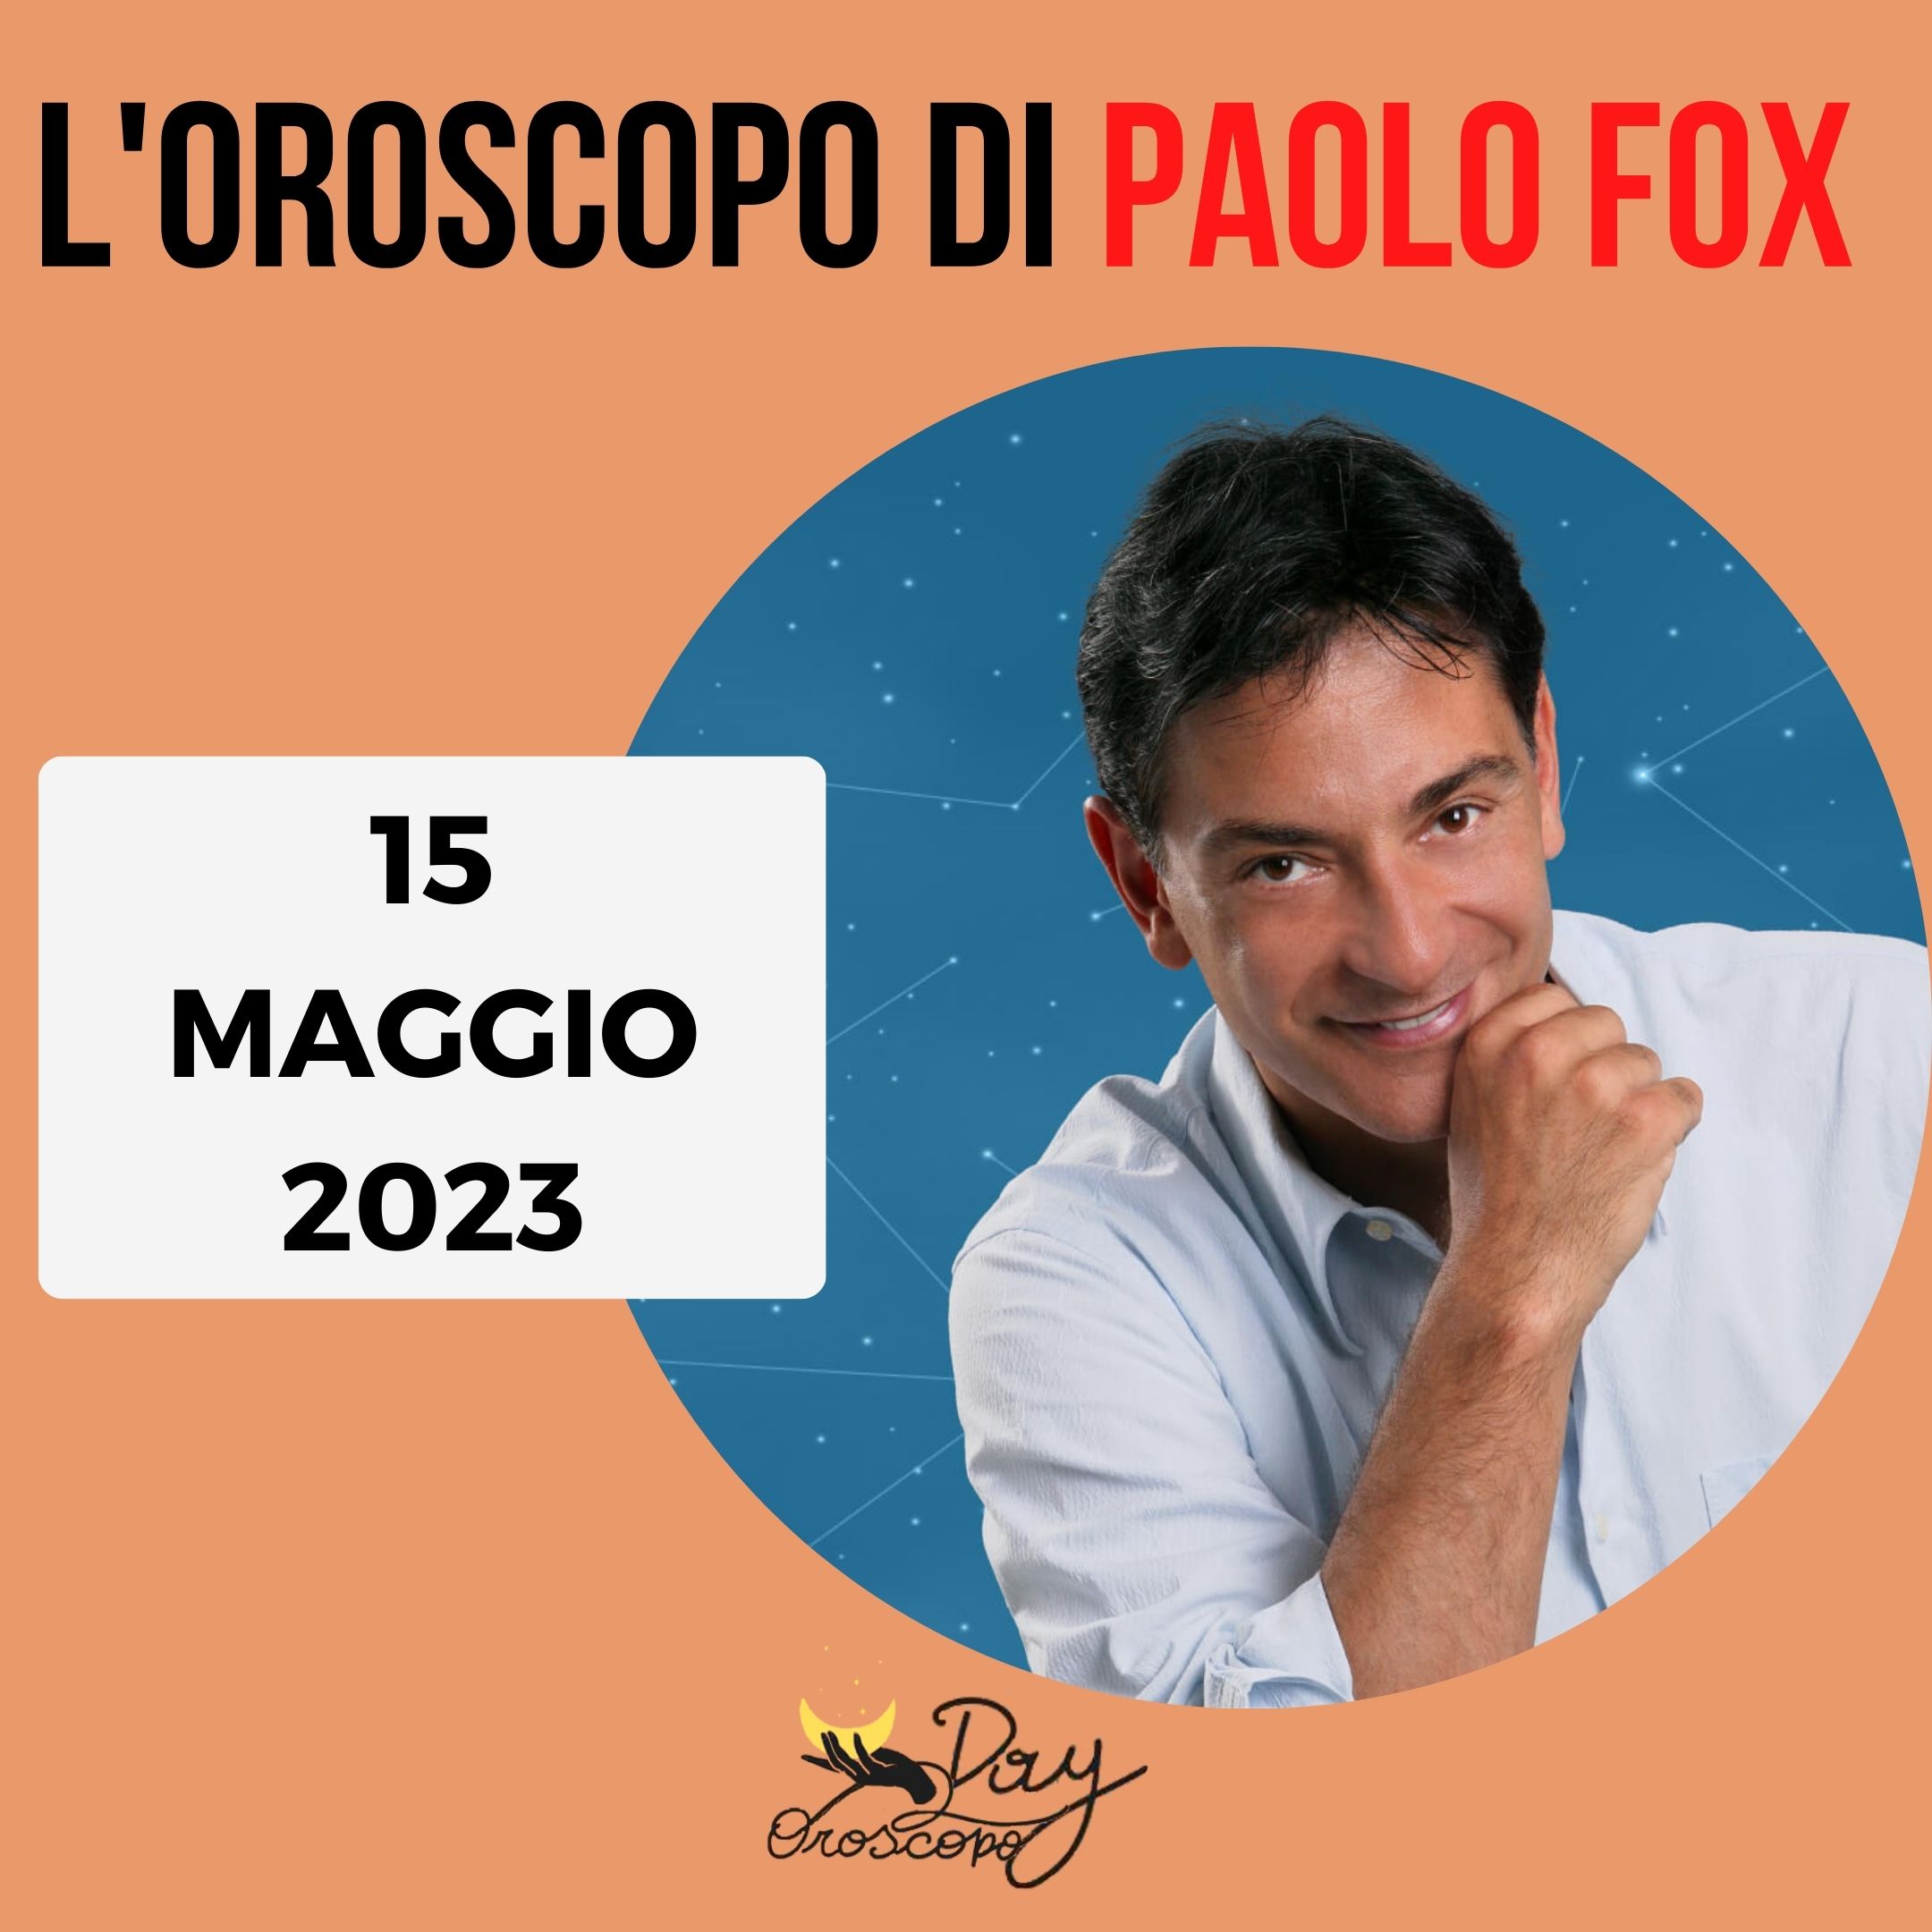 Oroscopo oggi domani Paolo Fox 15 maggio 2023